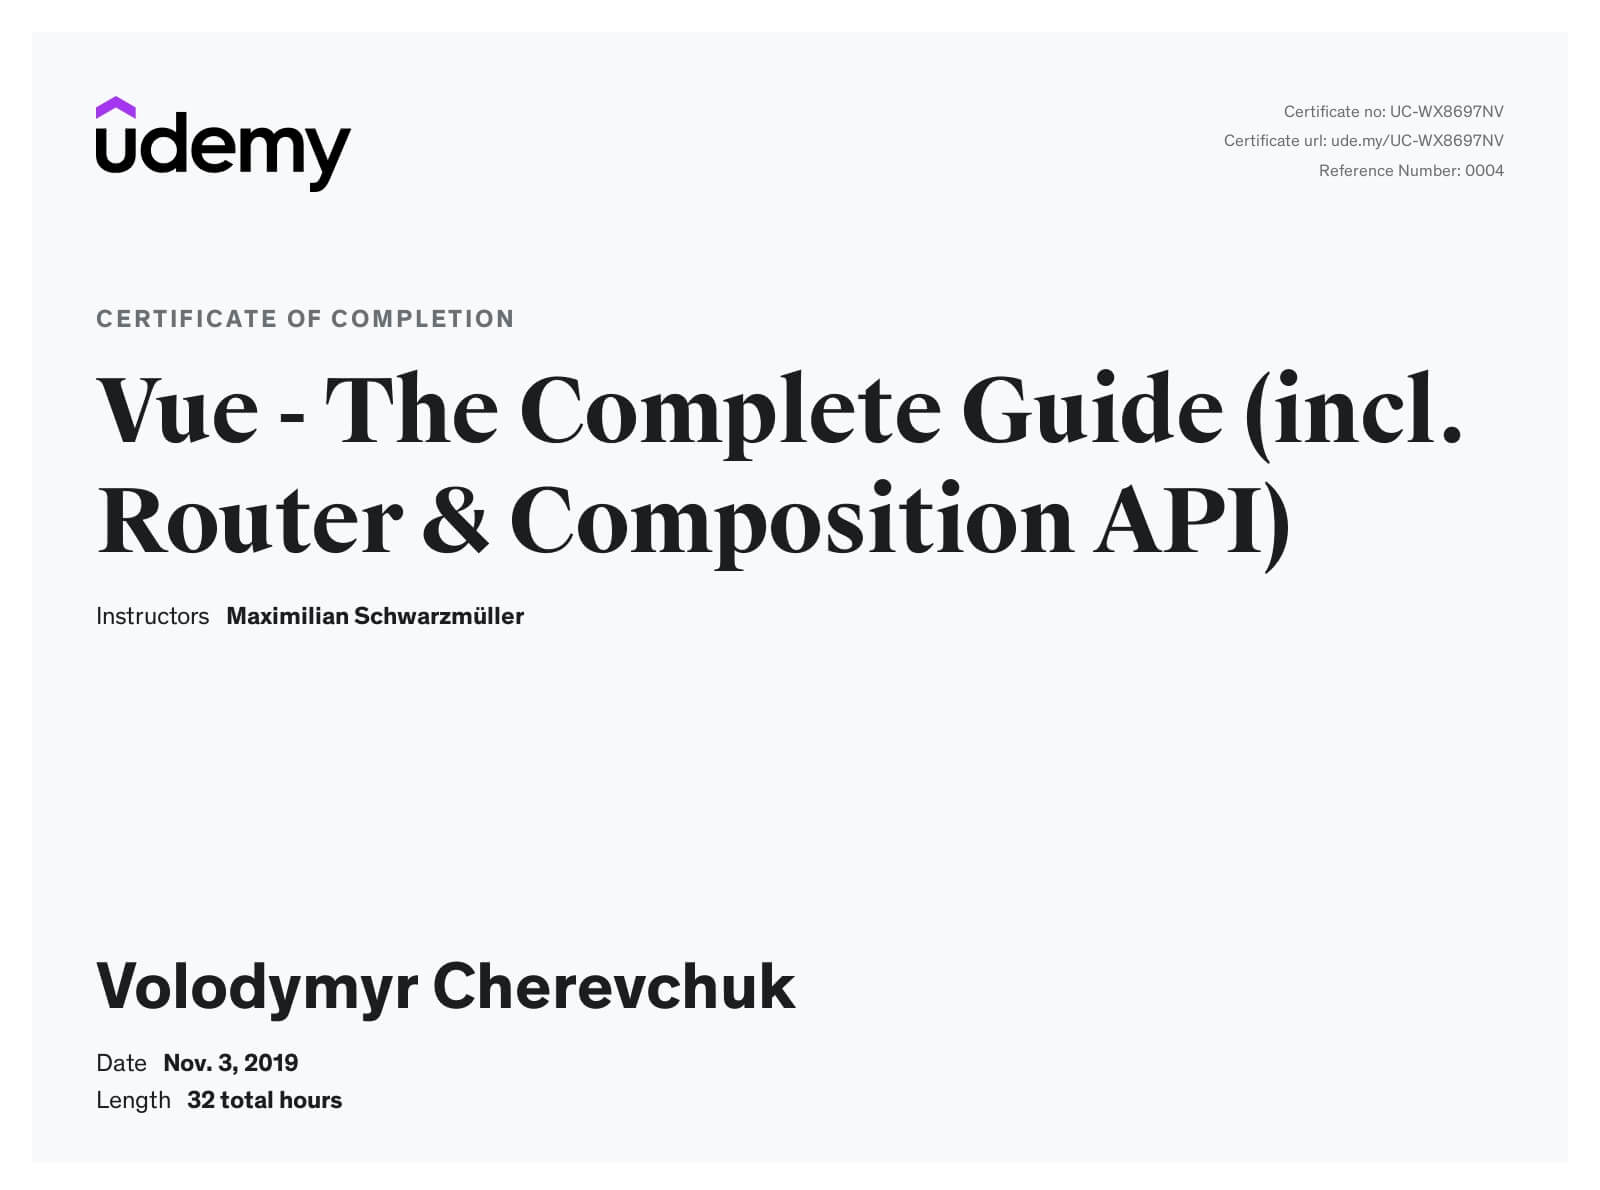 Vue JS 2 - The Complete Guide (incl. Vue Router & Vuex)